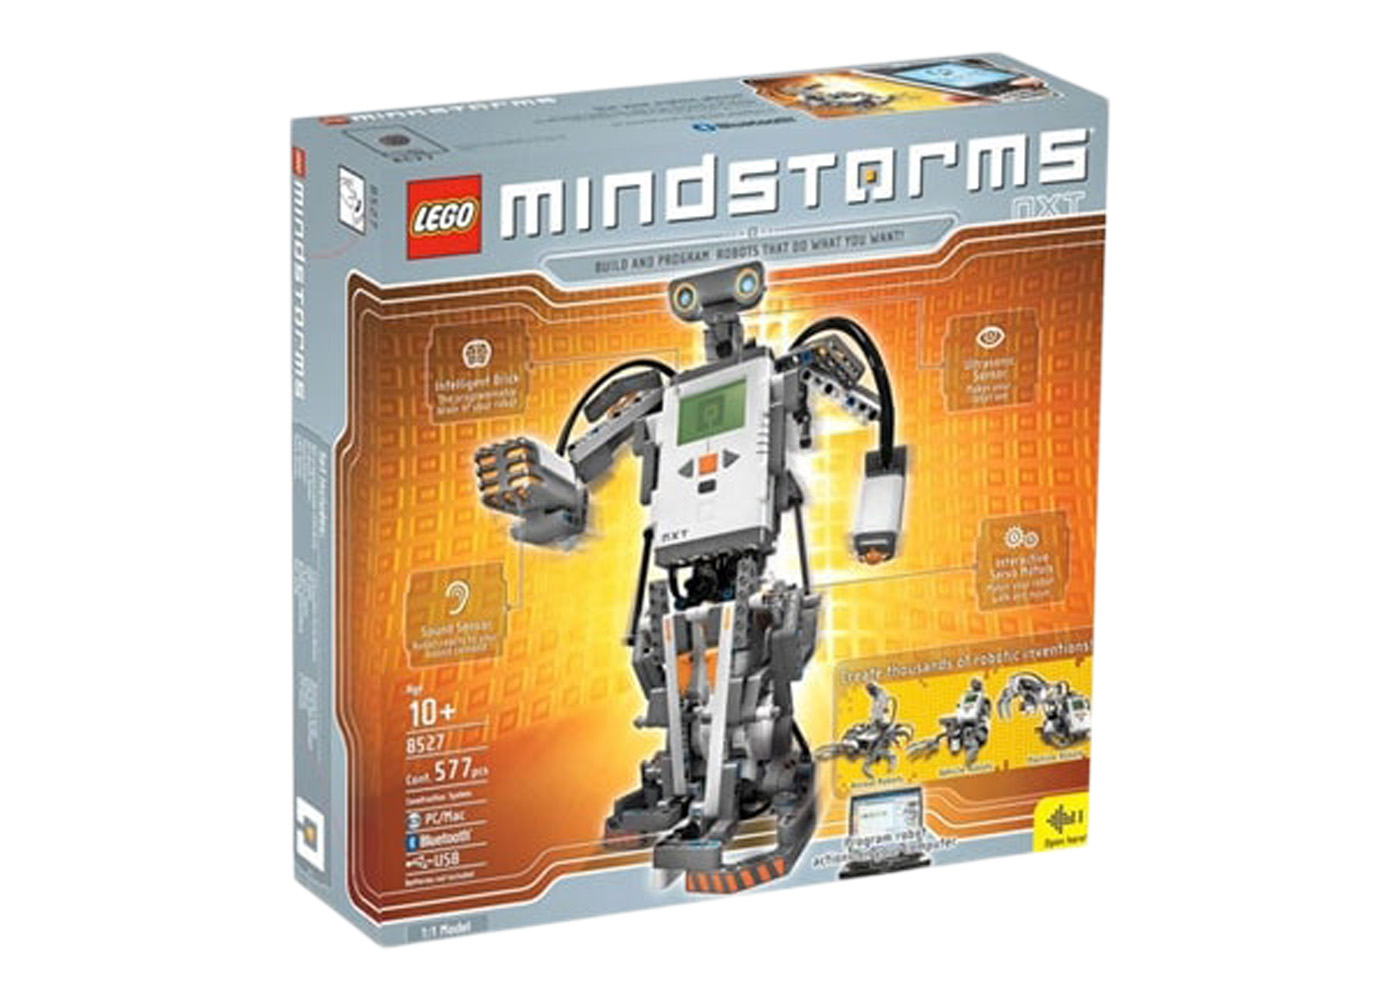 LEGO Mindstorms Mindstorms NXT Set 8527 - JP